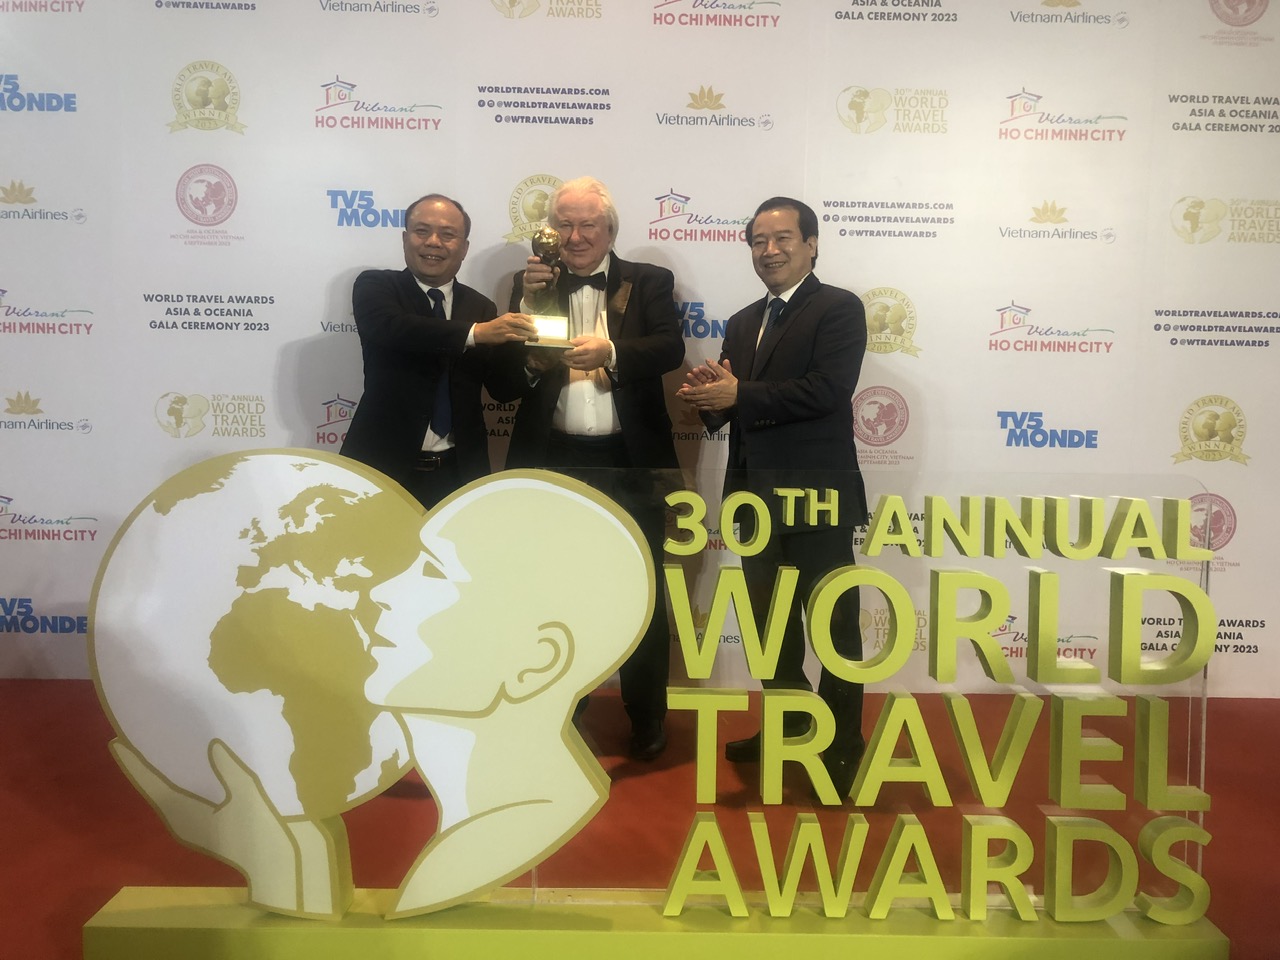 Phó Cục trưởng Cục Du lịch quốc gia Việt Nam Hà Văn Siêu và ông Nguyễn Văn Chính, Giám đốc Vườn quốc gia Cúc Phương nhận giải thưởng của World Travel Awards